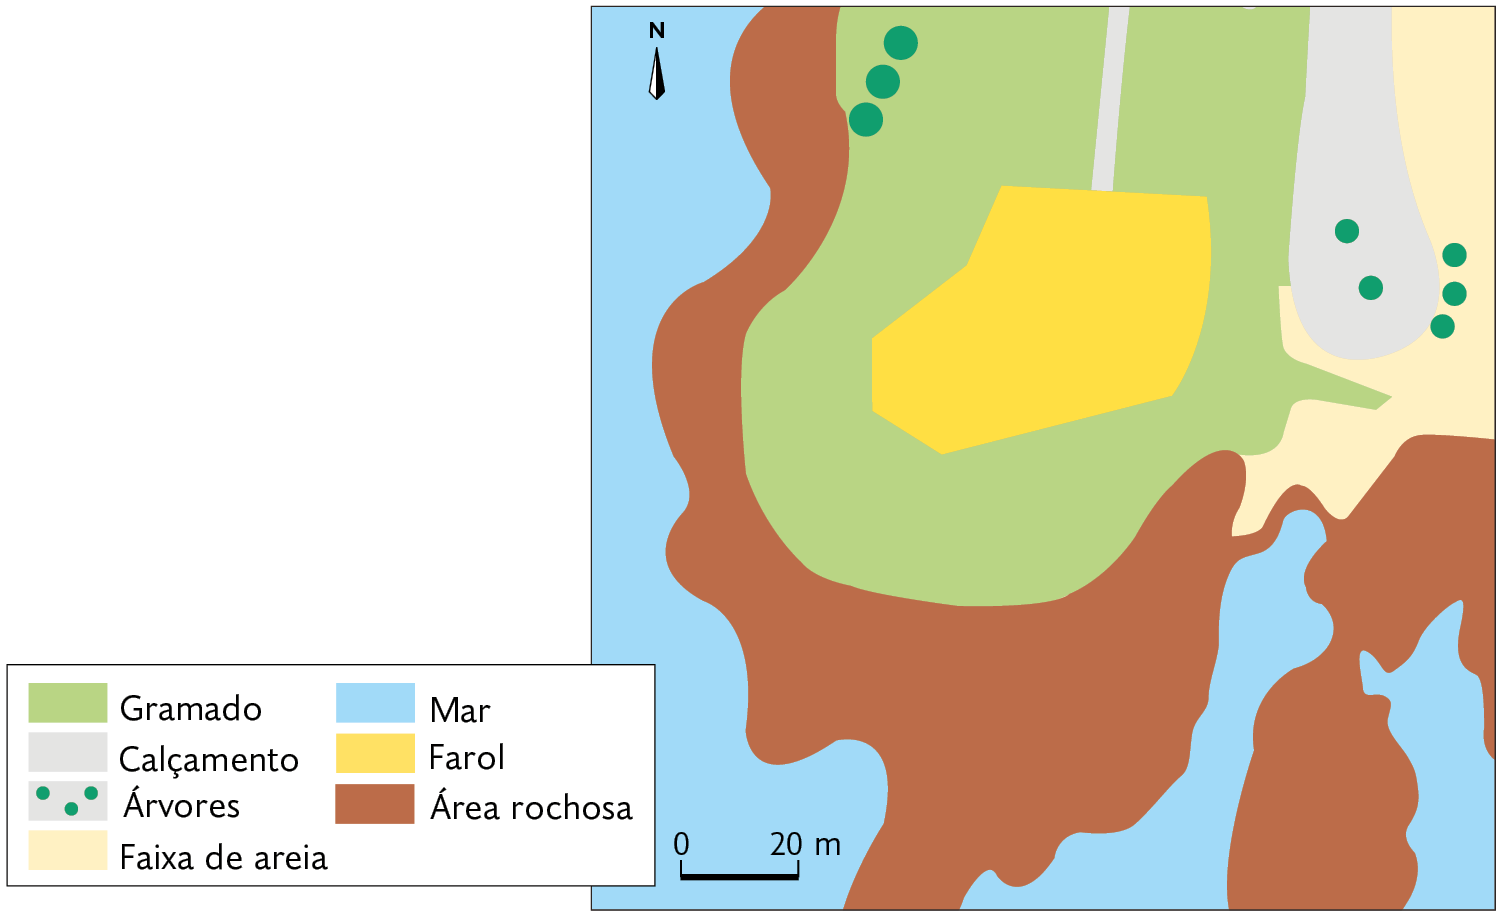 Mapa. Farol da Barra – Salvador, Bahia (2021). O farol está na região central. Ao redor há gramado; à esquerda calçamento, com árvores e cercado por uma faixa de areia; ao redor da construção: área rochosa e o mar. No canto superior esquerdo, seta apontando para o norte, e abaixo, a escala: 20 metros por centímetro.